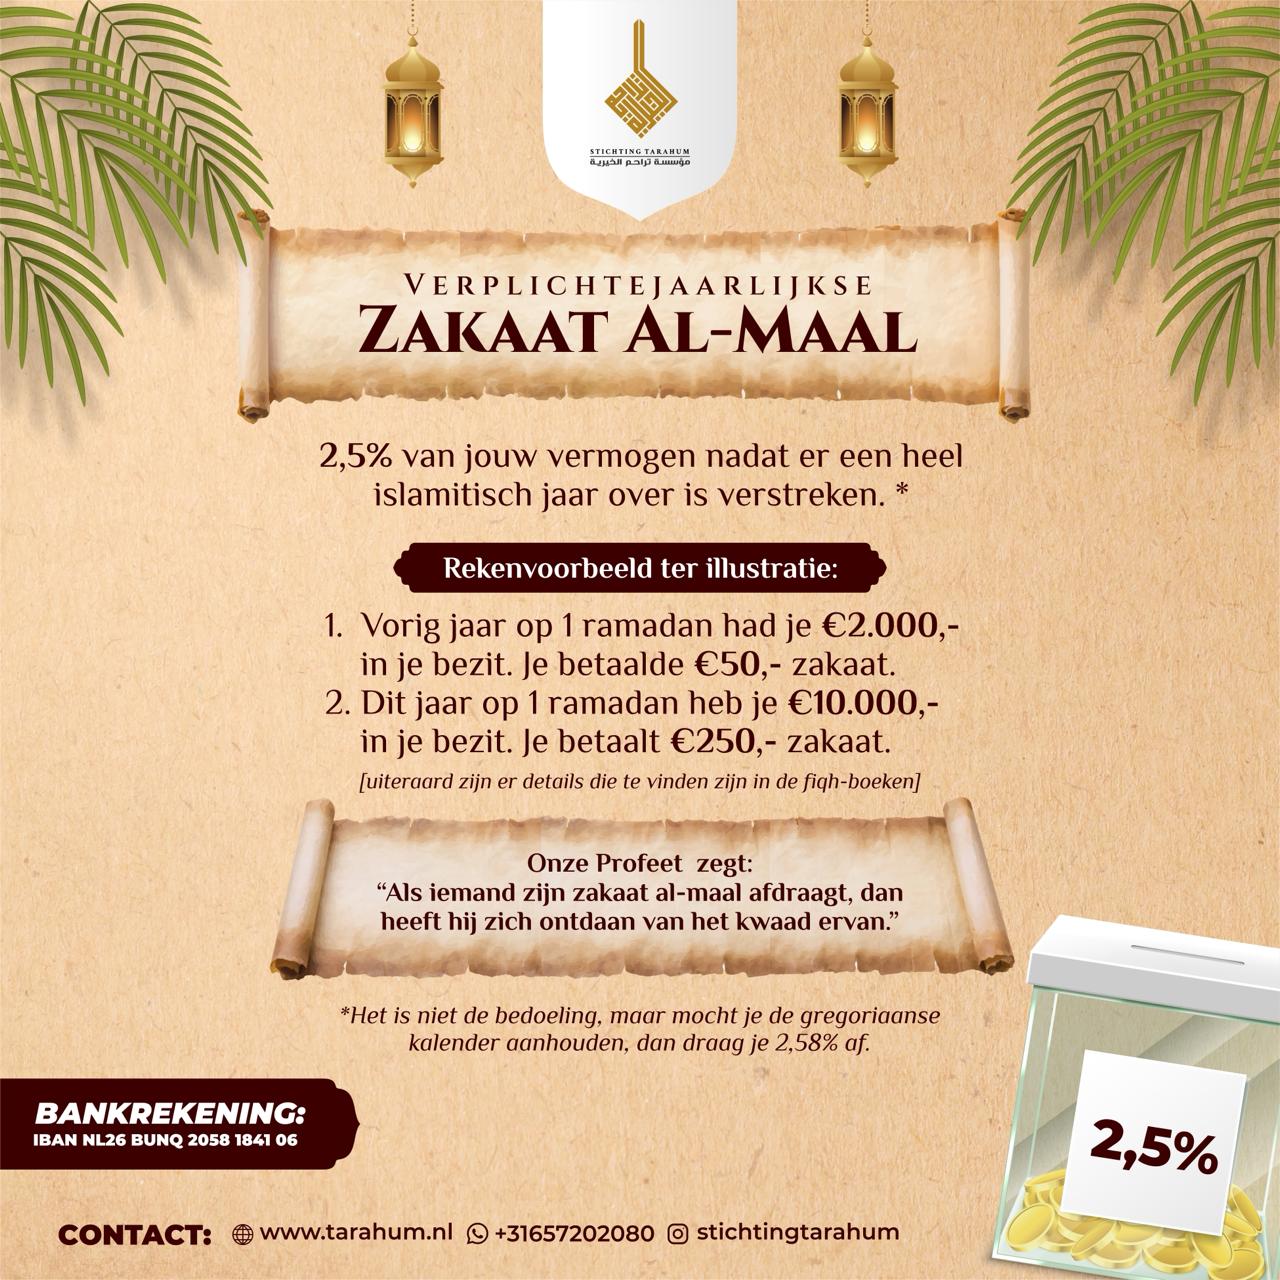 Project Zakaat Al-Maal